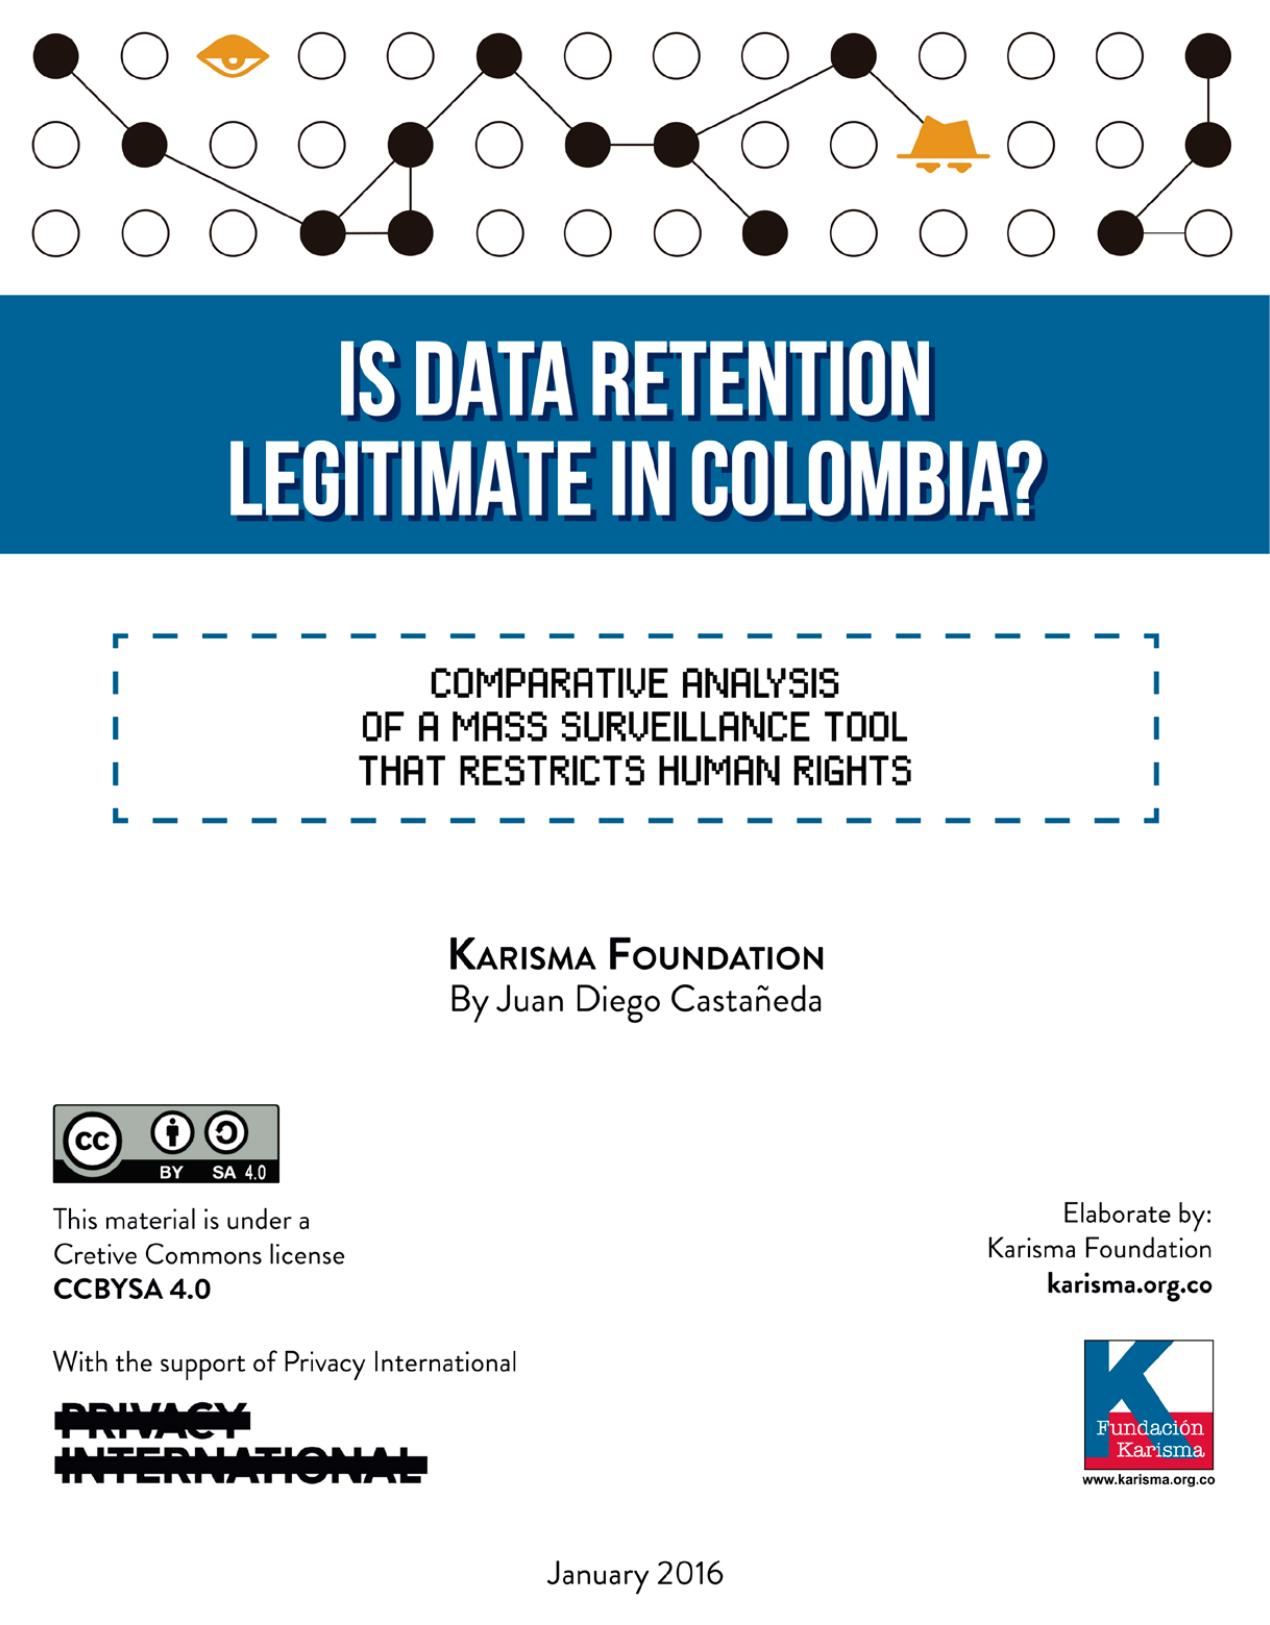 Es legítima la retención de datos en colombia? :: Análisis comparativo de una herramienta de vigilancia masiva que restringe los derechos humanos